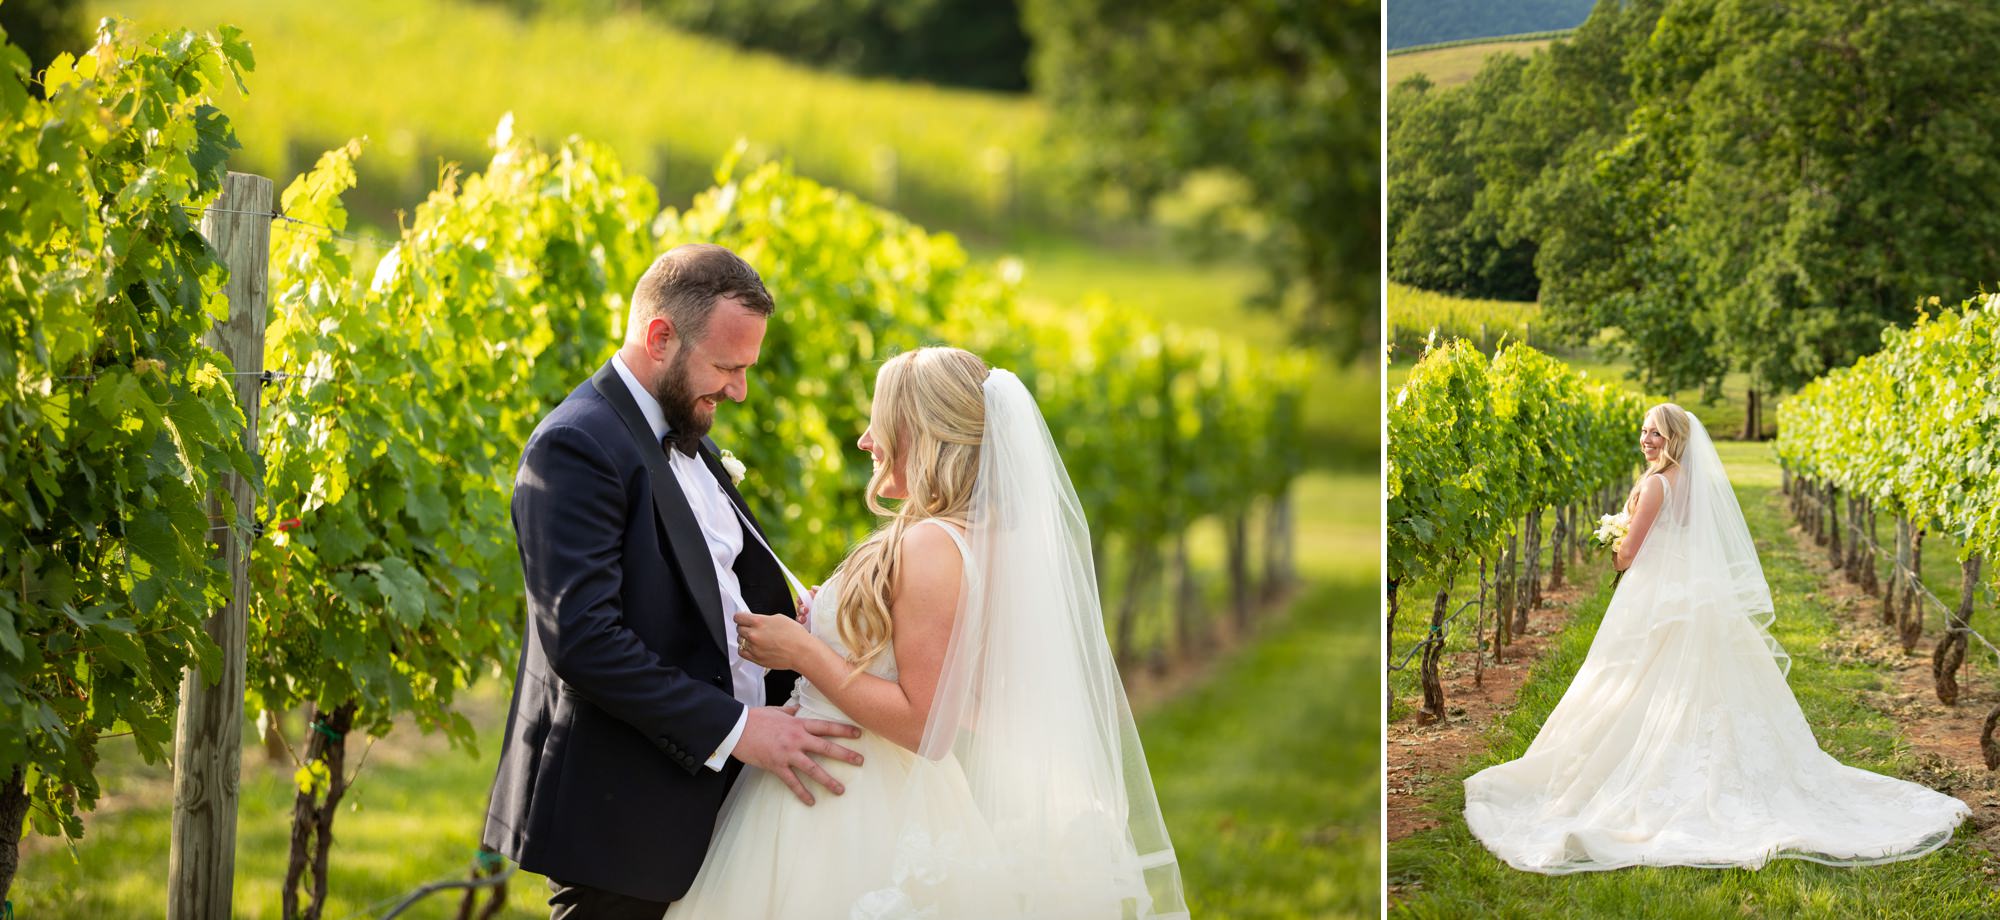 Veritas Winery and Vineyard Weddings